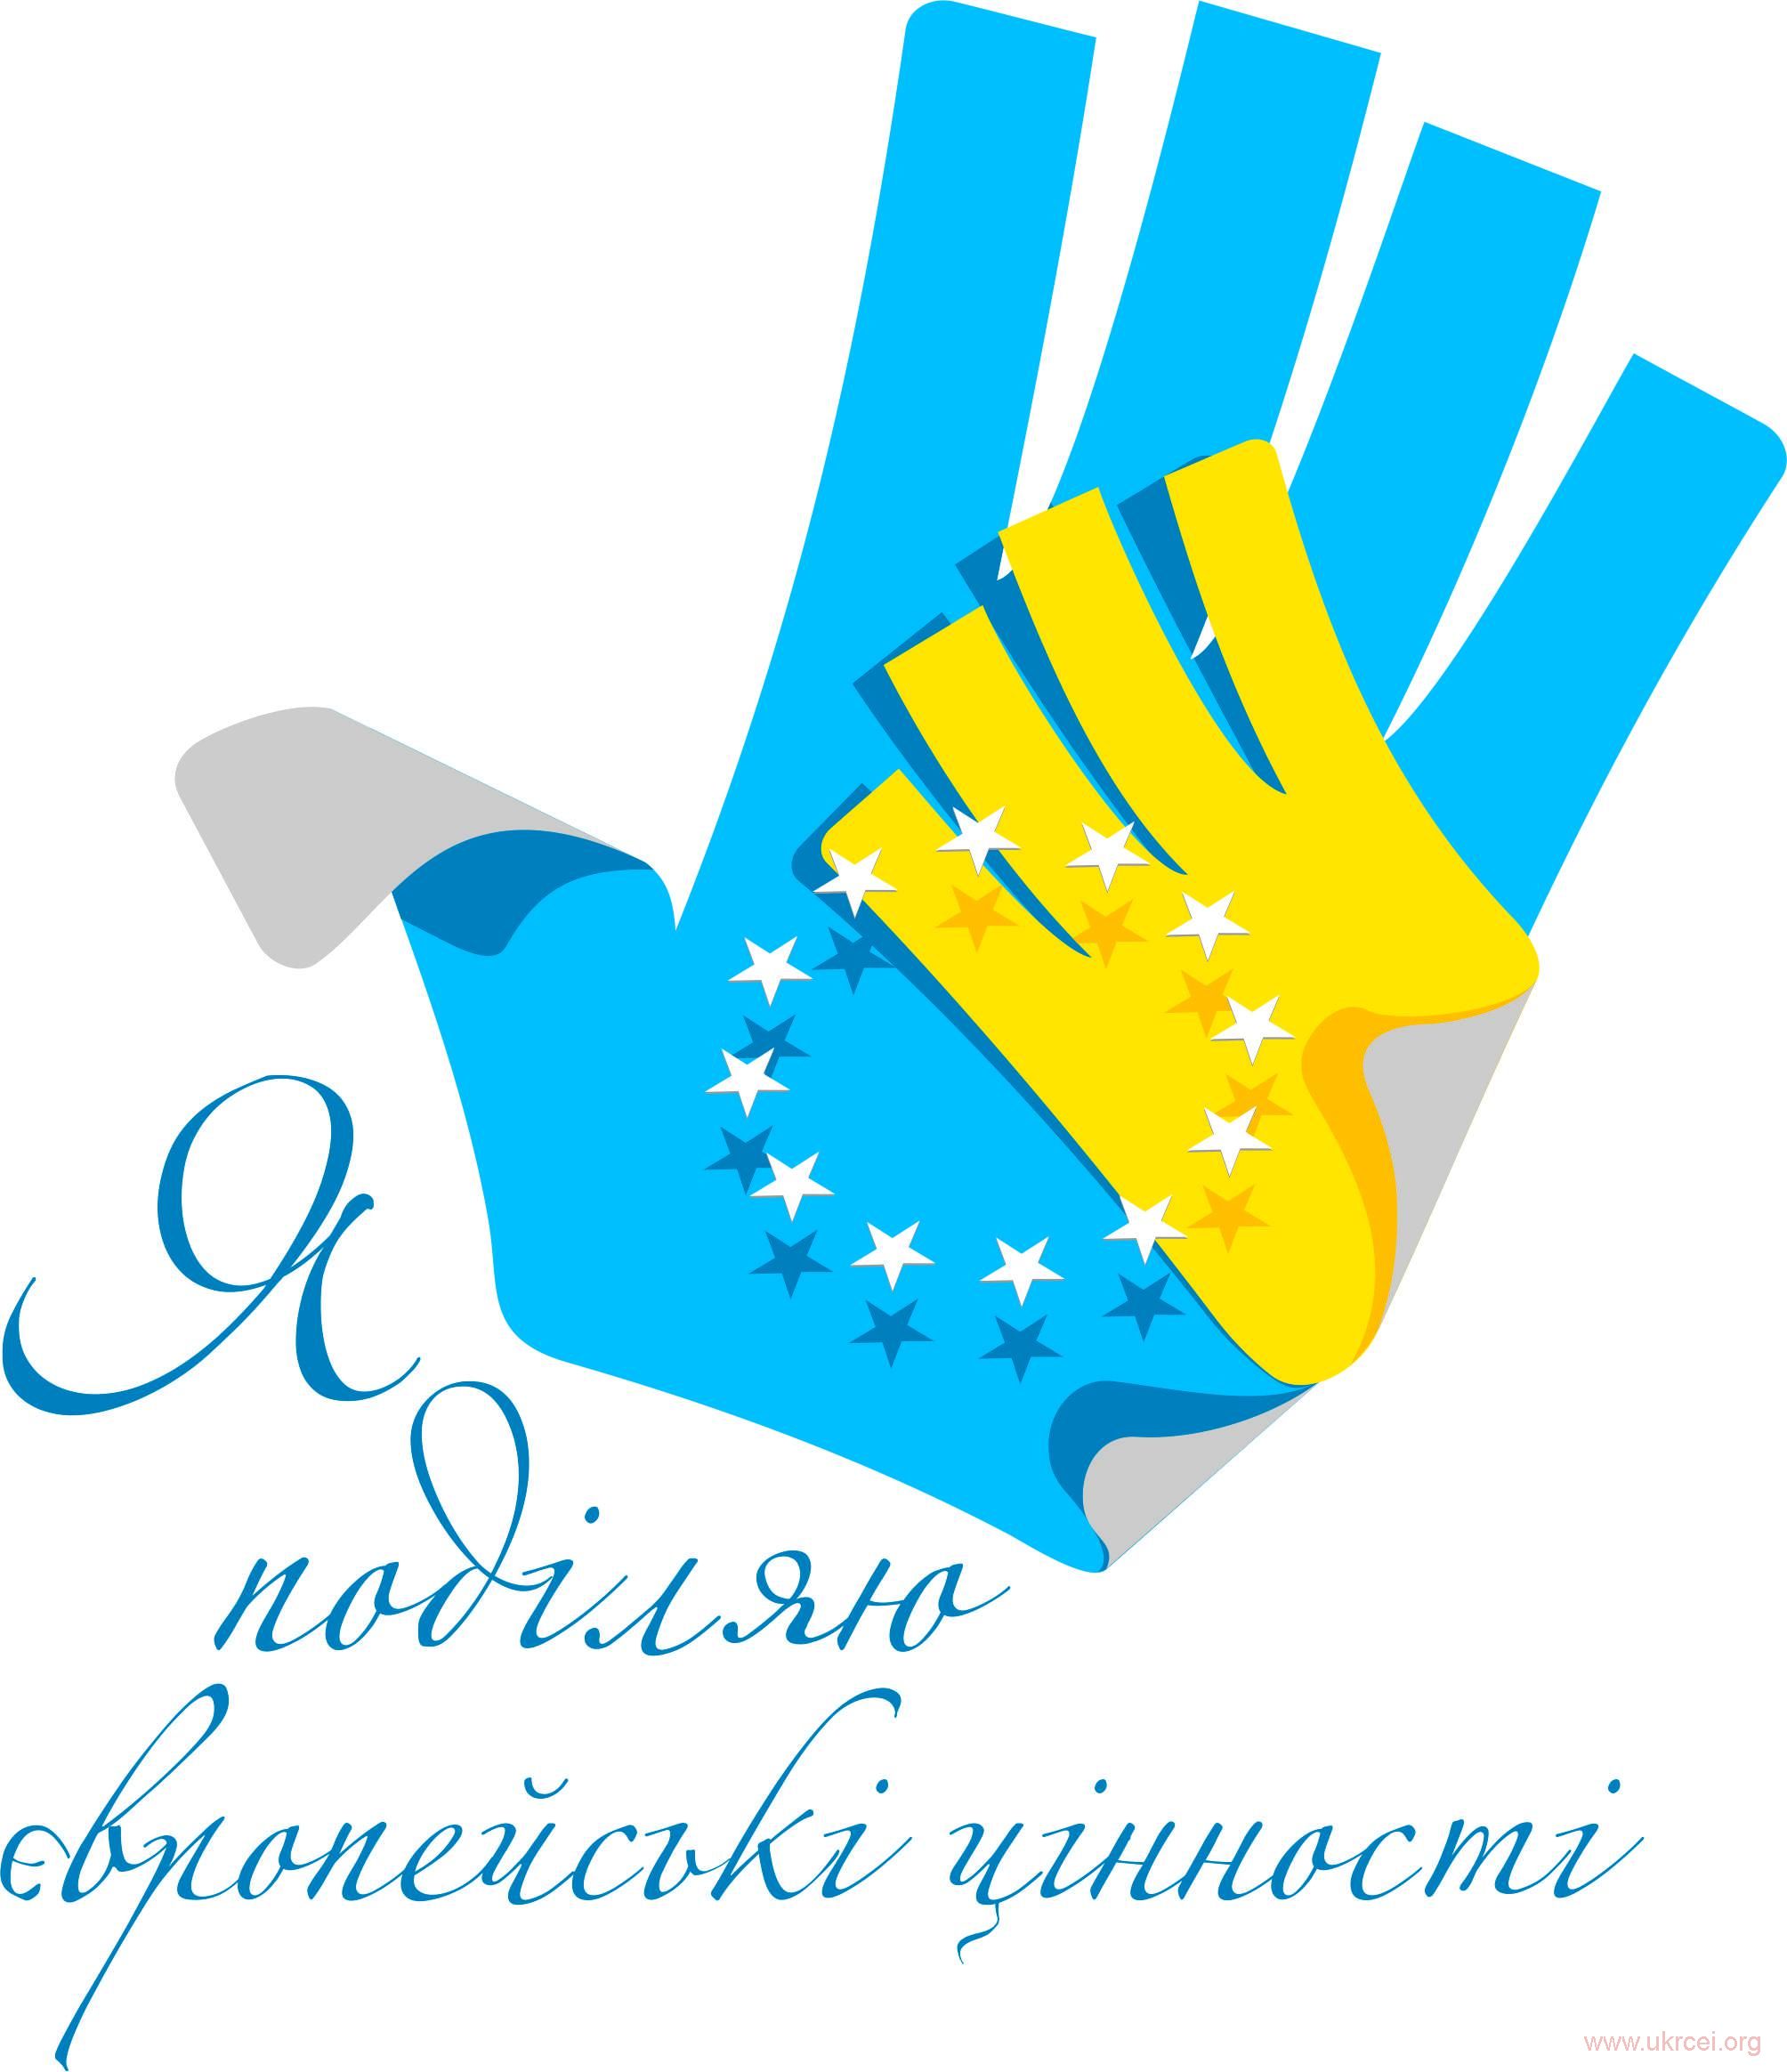 Програма Днів європейської спадщини у Чернівцях 2016